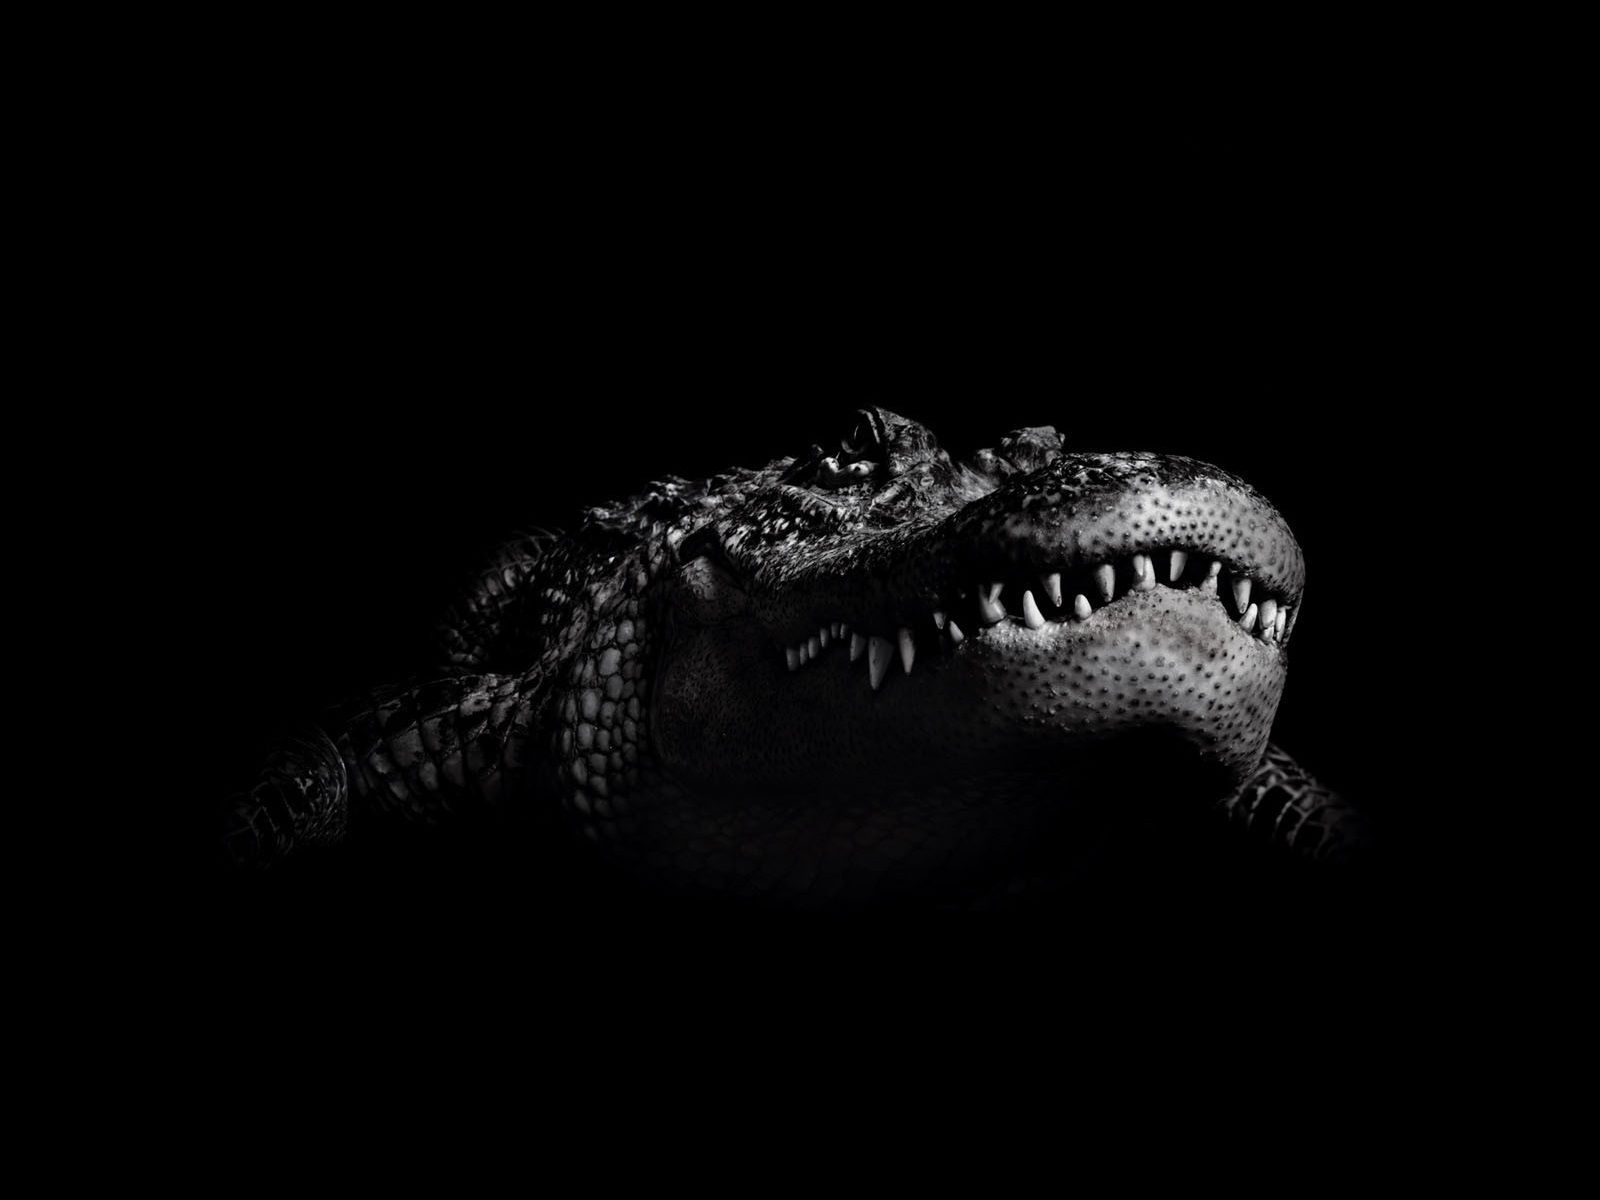 crocodile wallpaper hd,crocodilia,alligator,crocodile,black,reptile